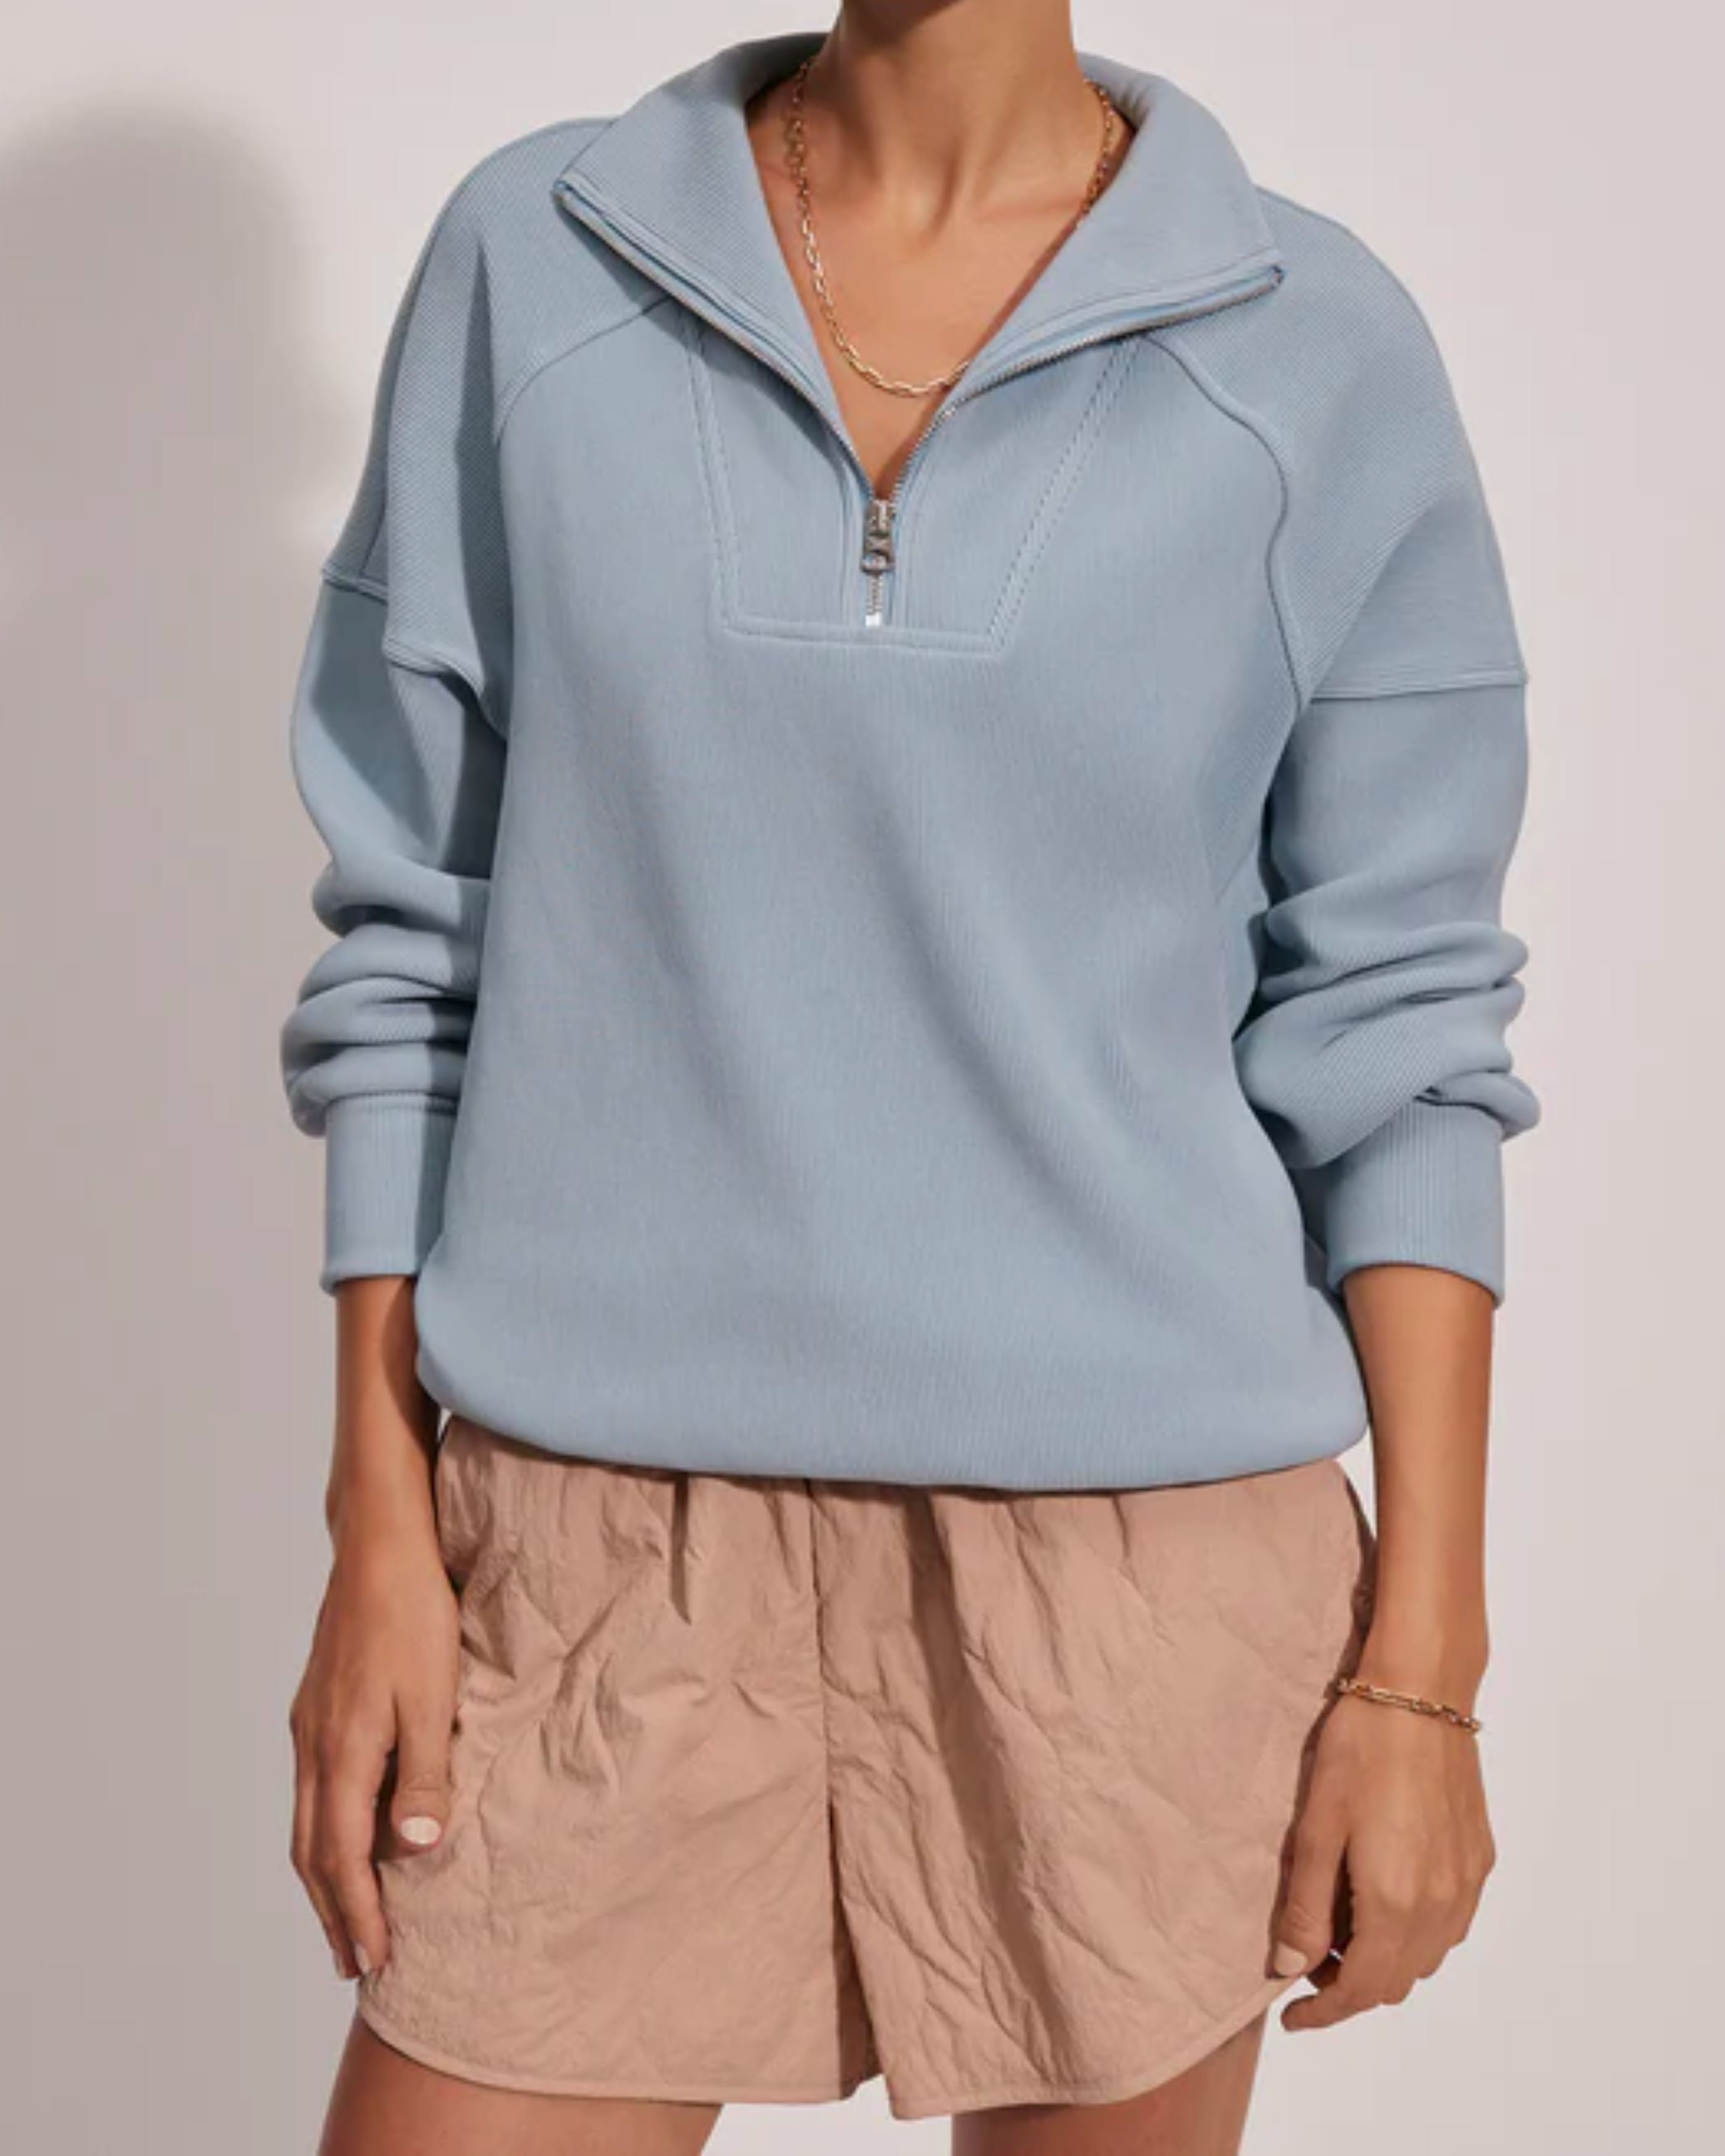 Varley Rhea Half Zip Sweatshirt in Ashley Blue